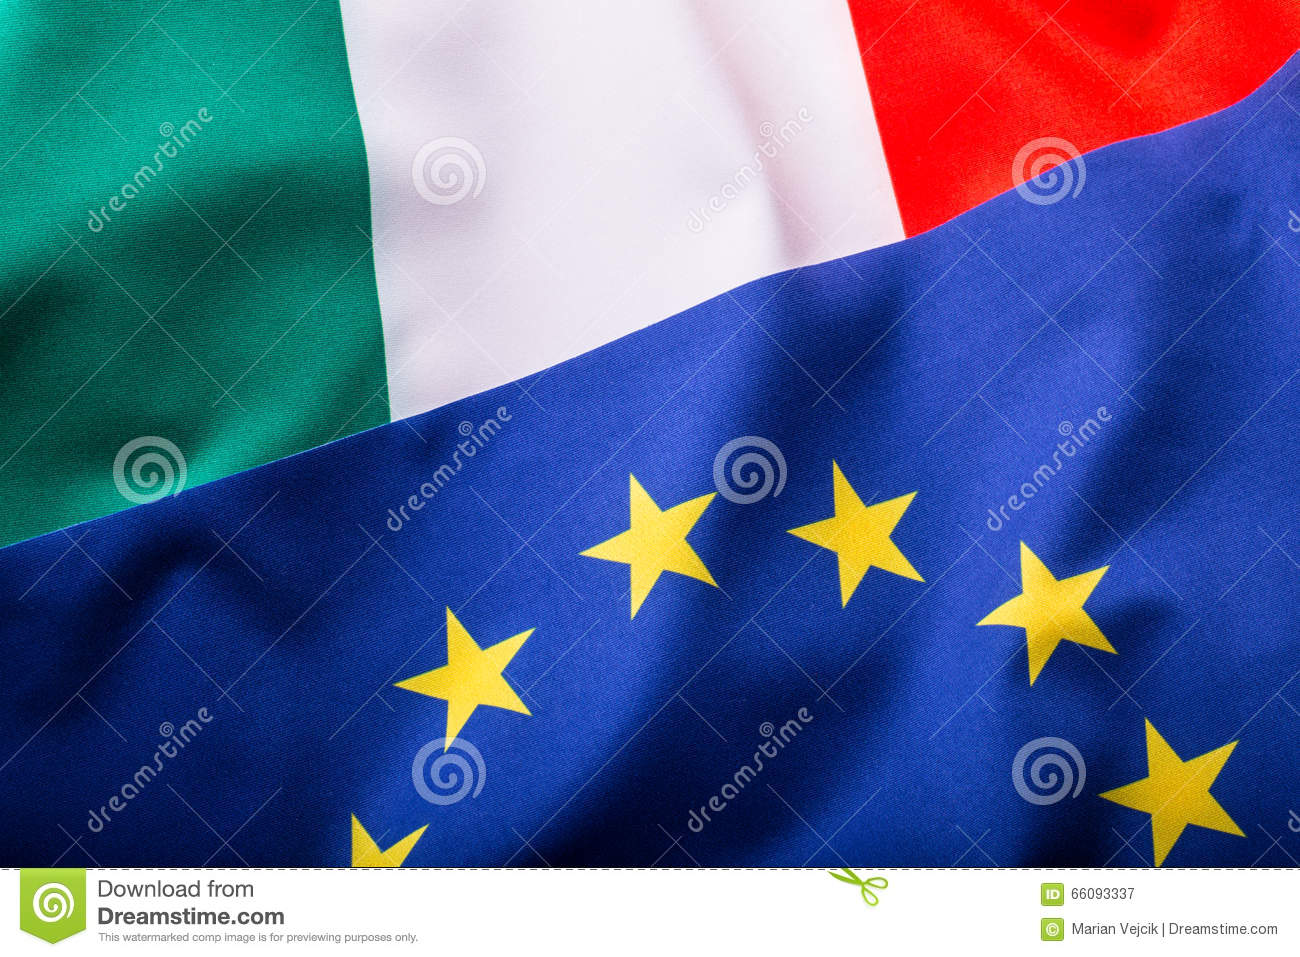 Italia , Europa sinistra o destra ? Gli elettori sono di altro target . Arrivano i giovani